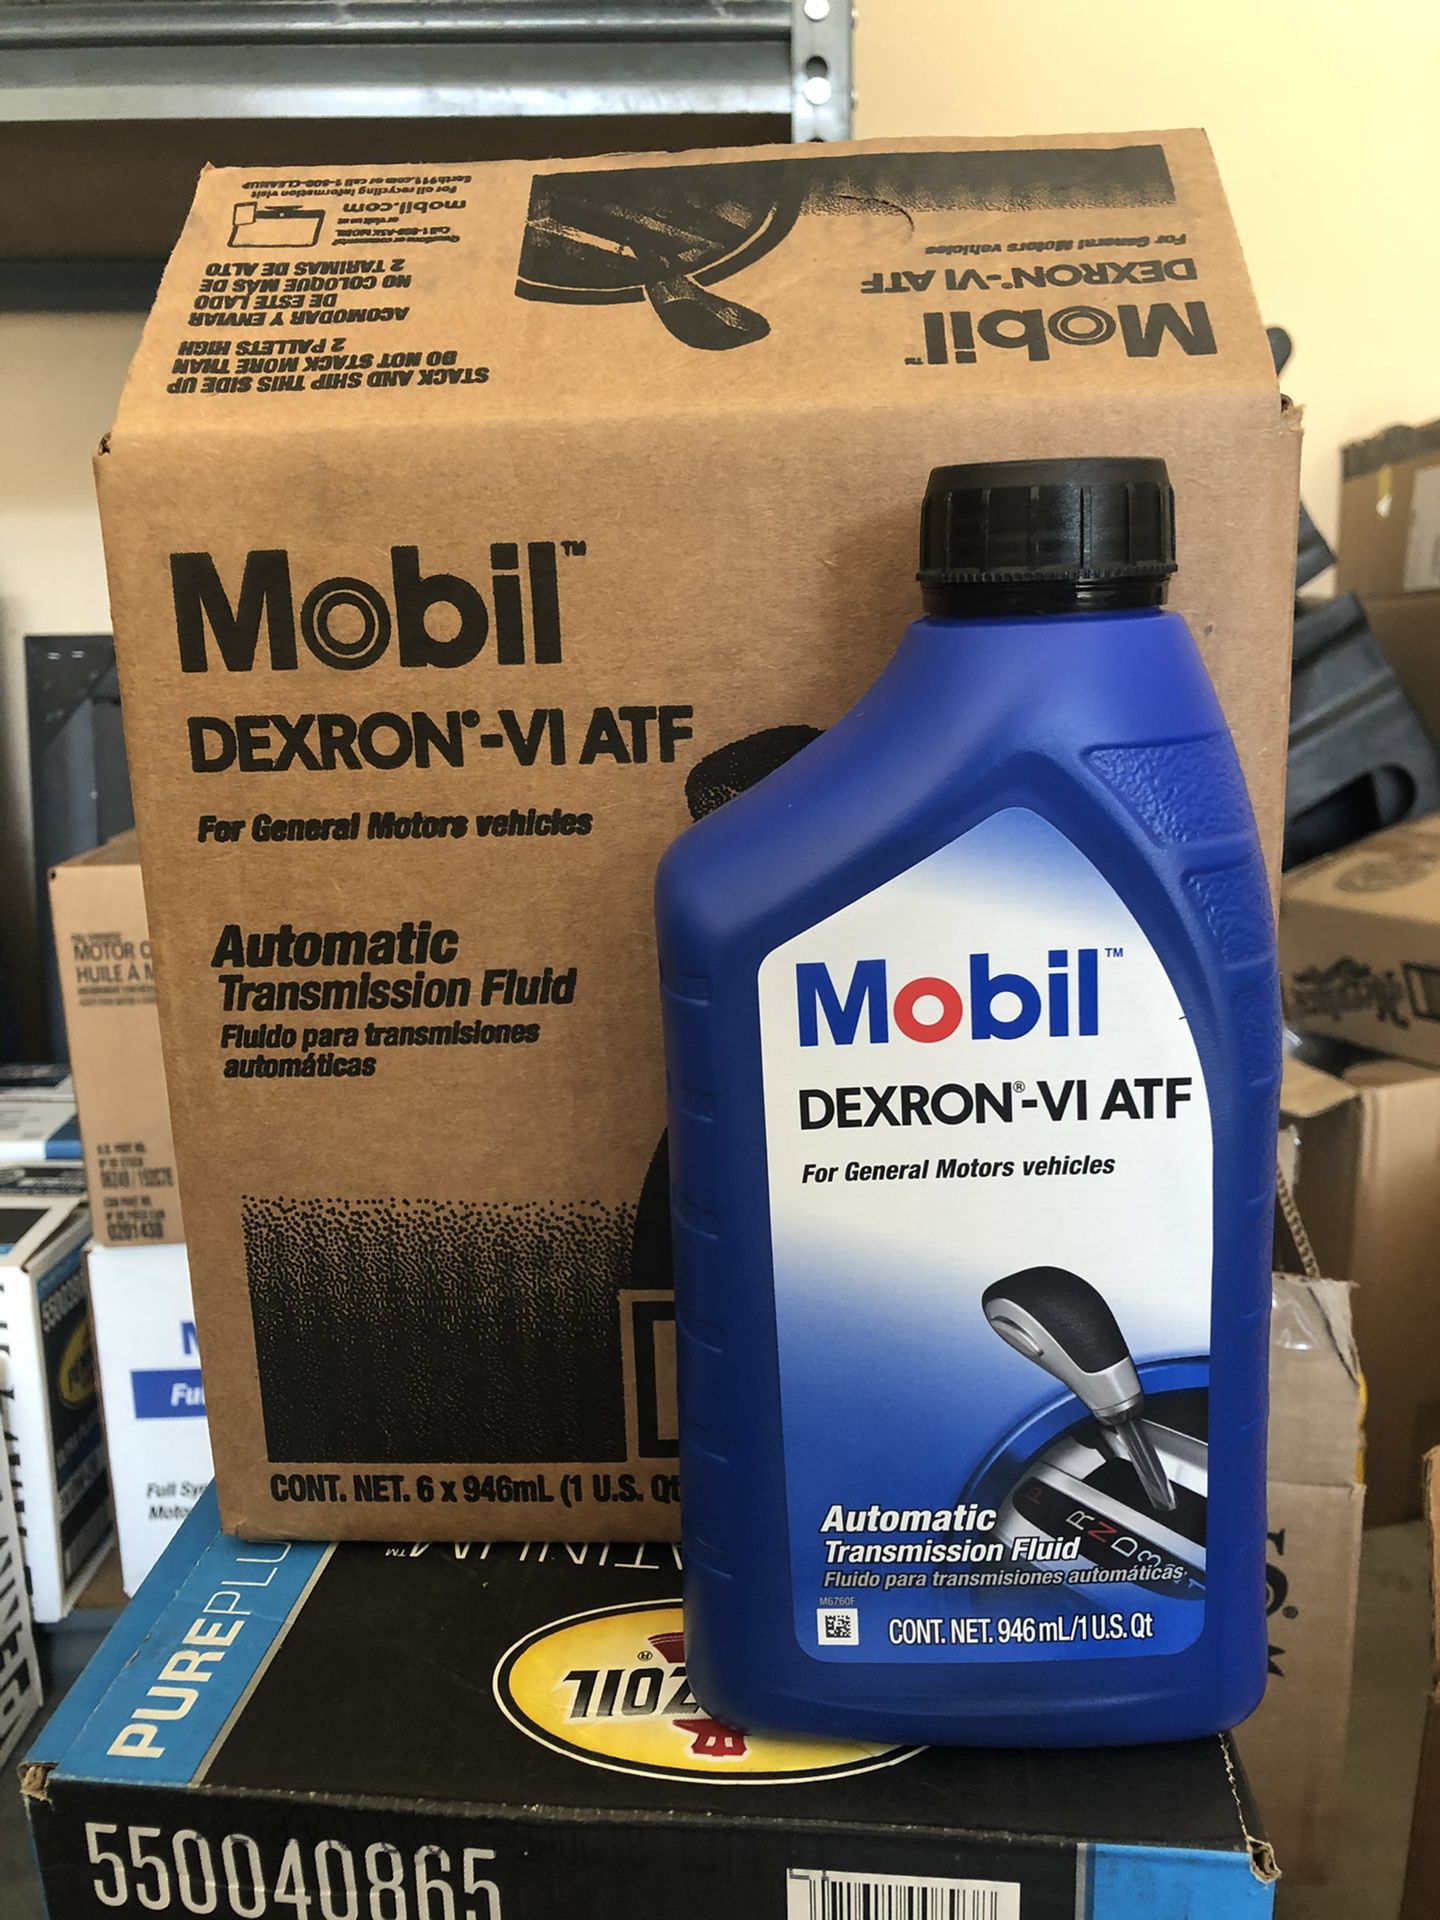 Mobil DEXRON-VI ATF Automatic transmission fluid 1Qt*6 bottles